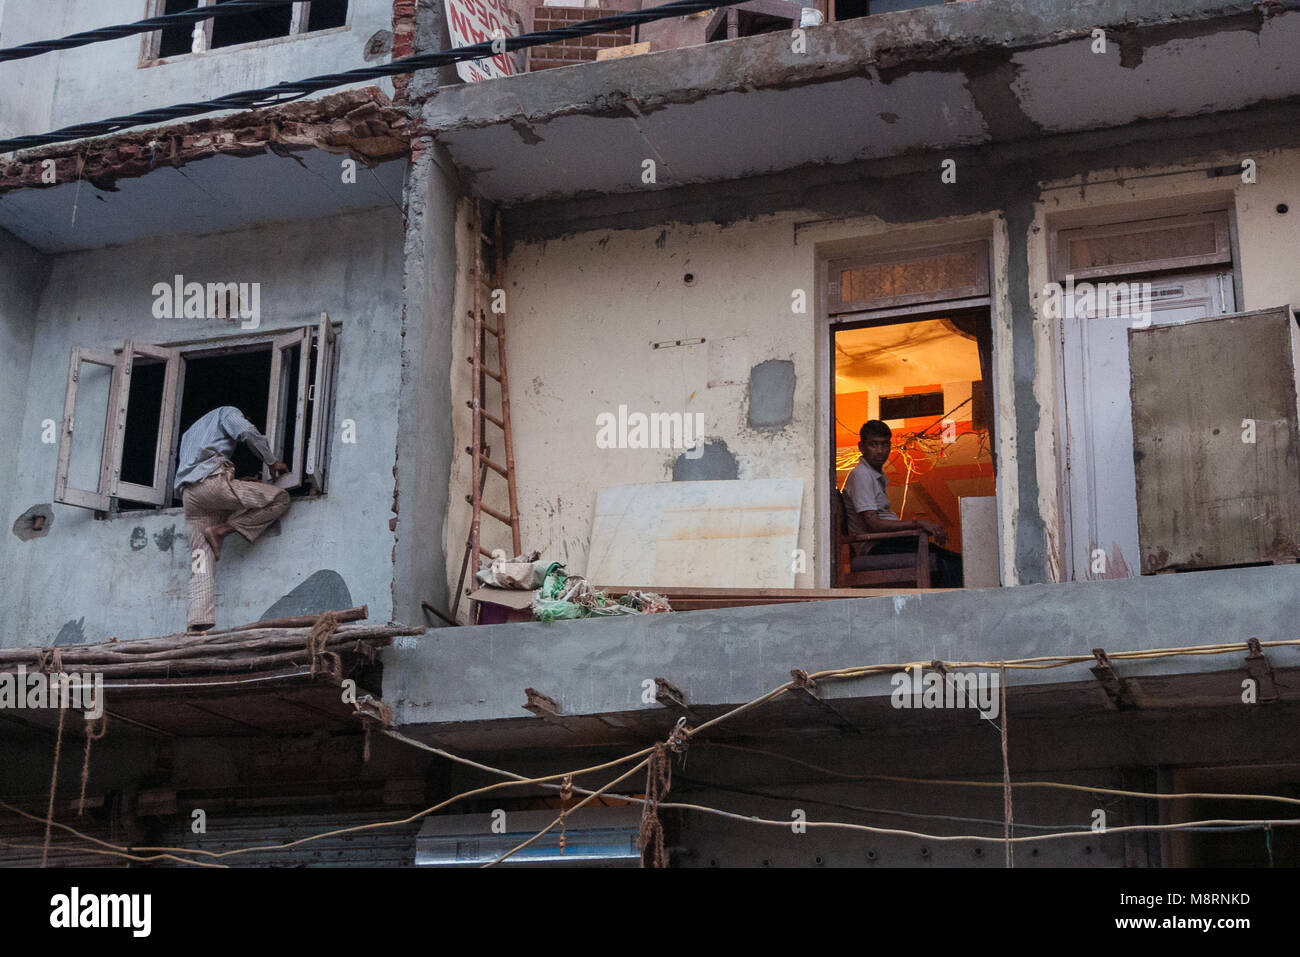 New Delhi, India:In un edificio in fase di ristrutturazione nel Sadar Bazar, un uomo cerca di entrare attraverso la finestra mentre un altro lavora nel suo ufficio. Foto Stock